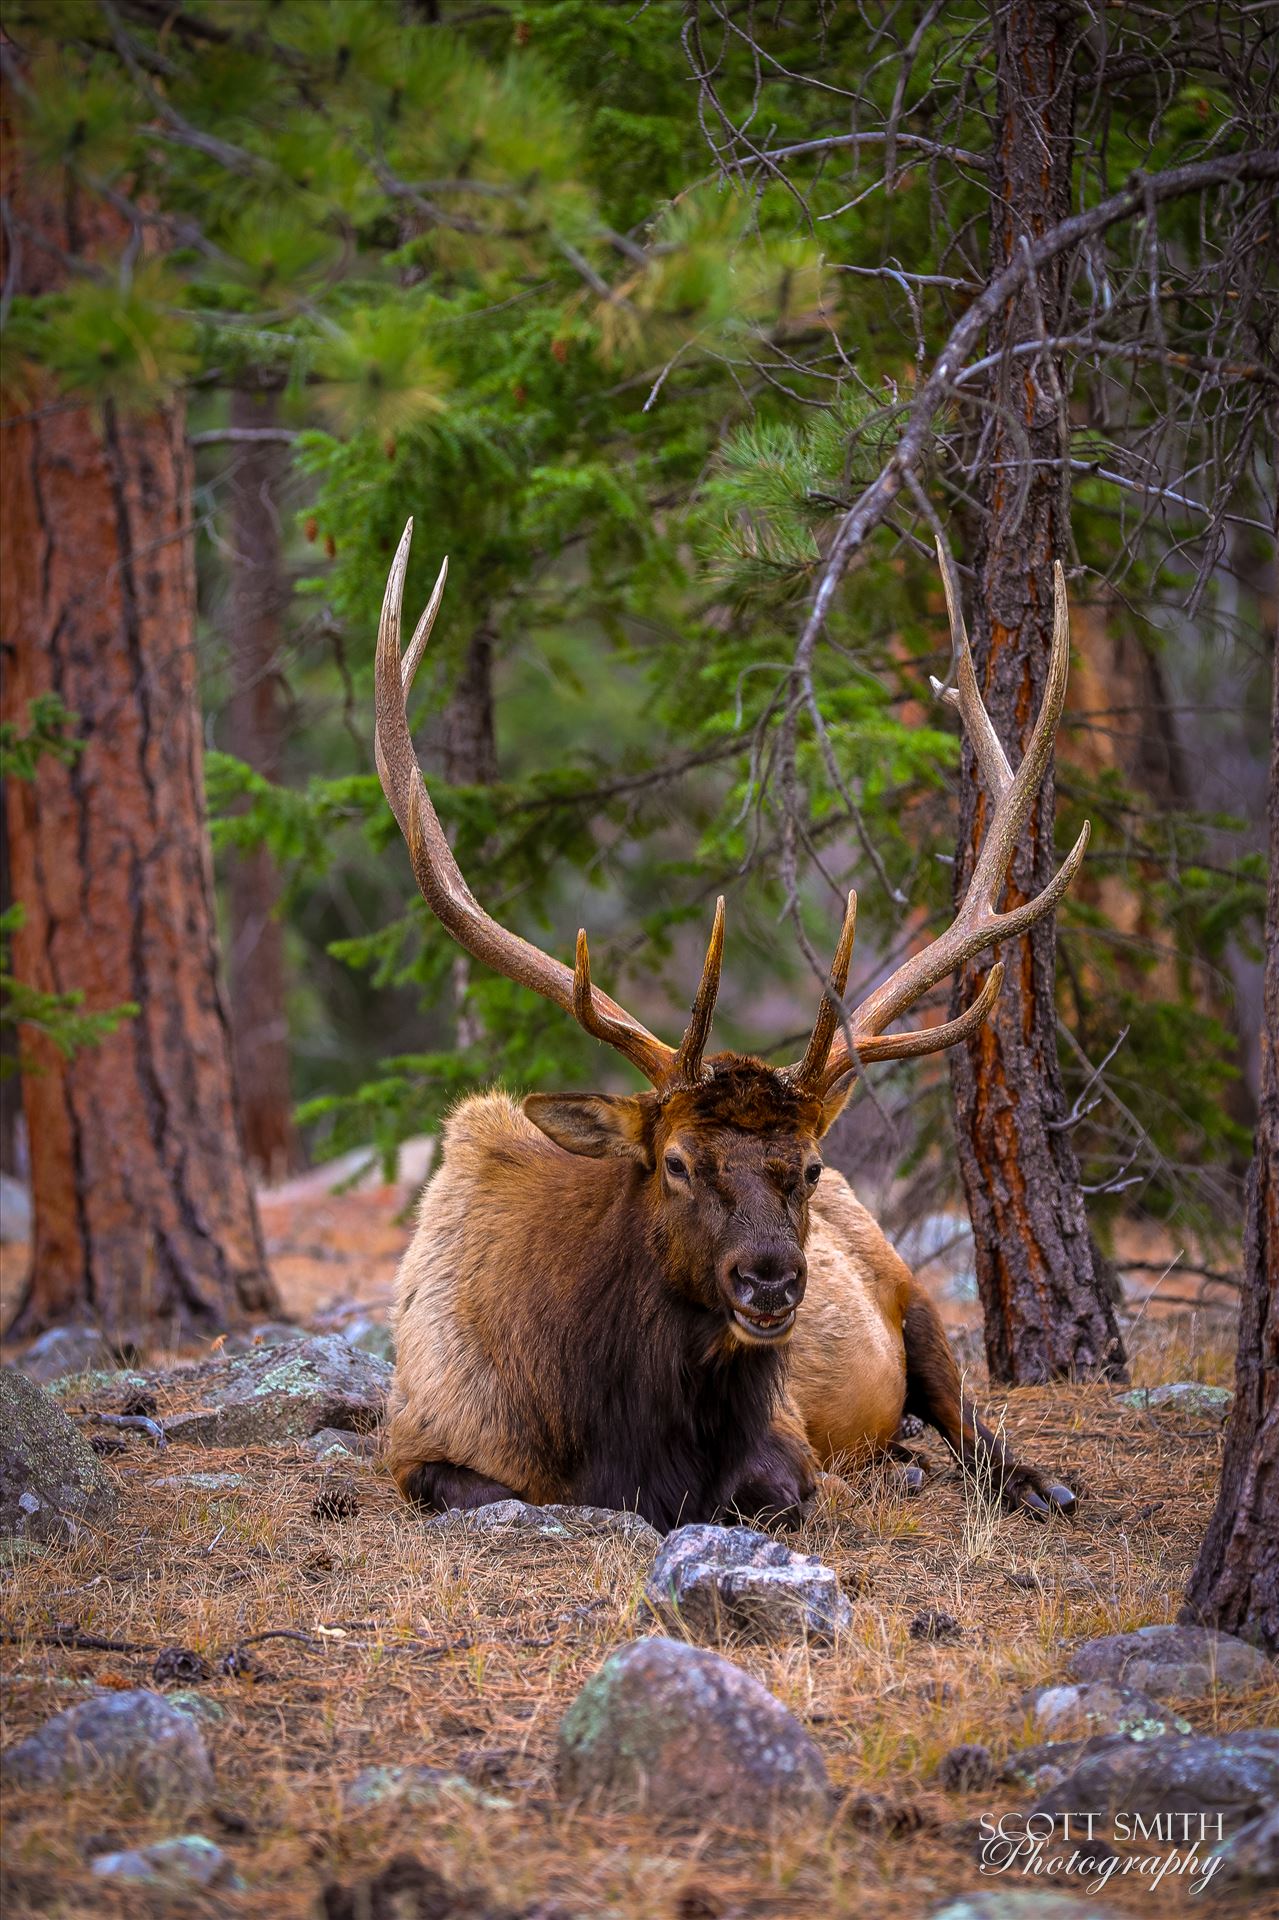 Sunday Elk No 07 A heard of Elk near the entrance to Rocky Mountain National Park, Estes Park, Colorado. by Scott Smith Photos